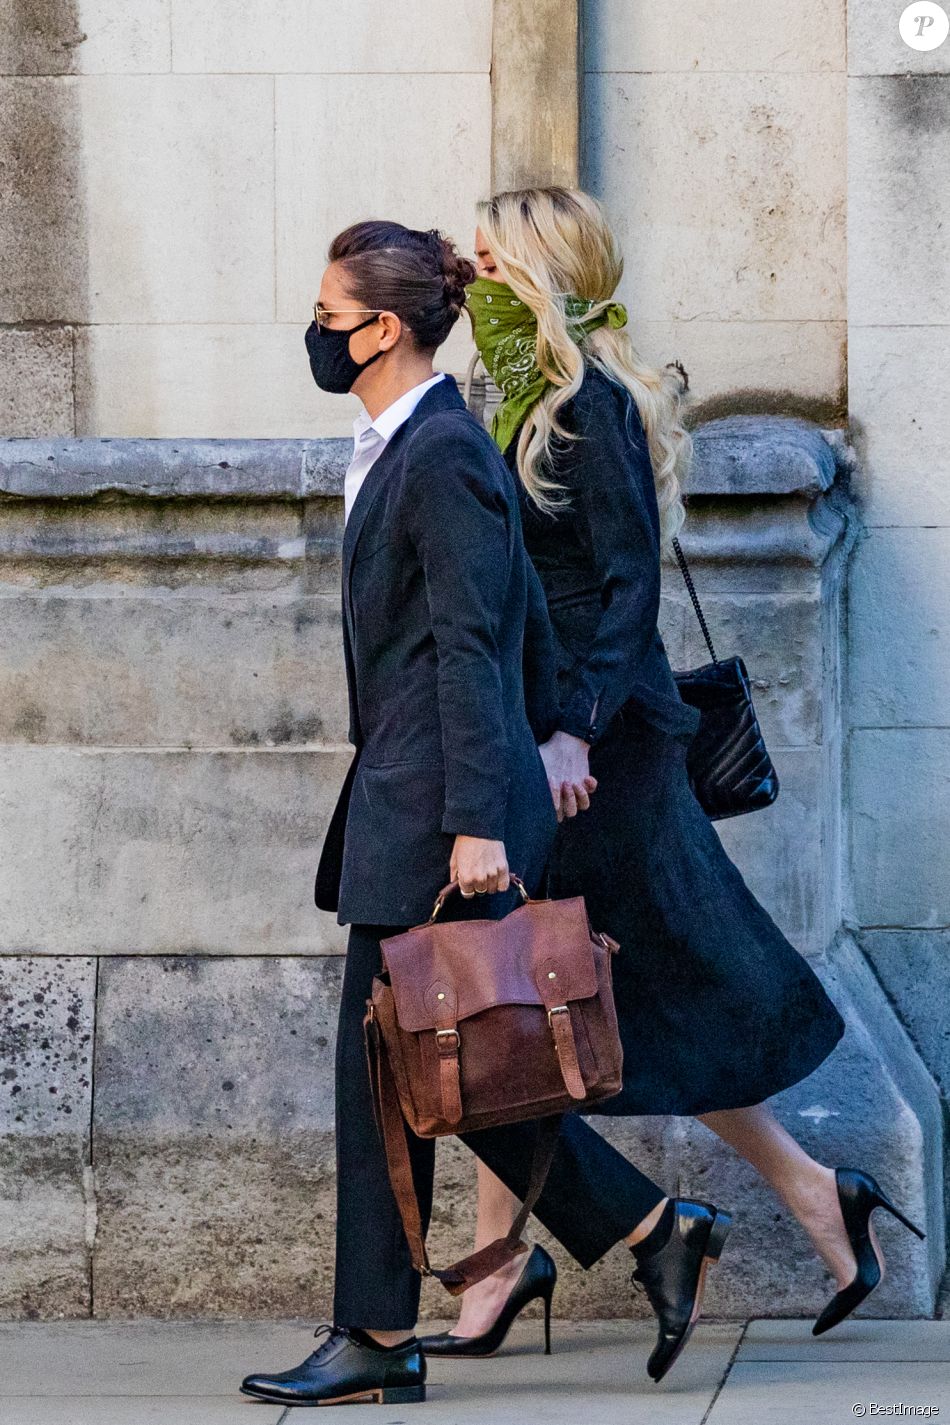 Amber Heard et sa compagne Bianca Butti arrivent, main dans la main, à la Cour royale de justice à Londres, pour le procès en diffamation contre le magazine The Sun Newspaper. Le 10 juillet 2020